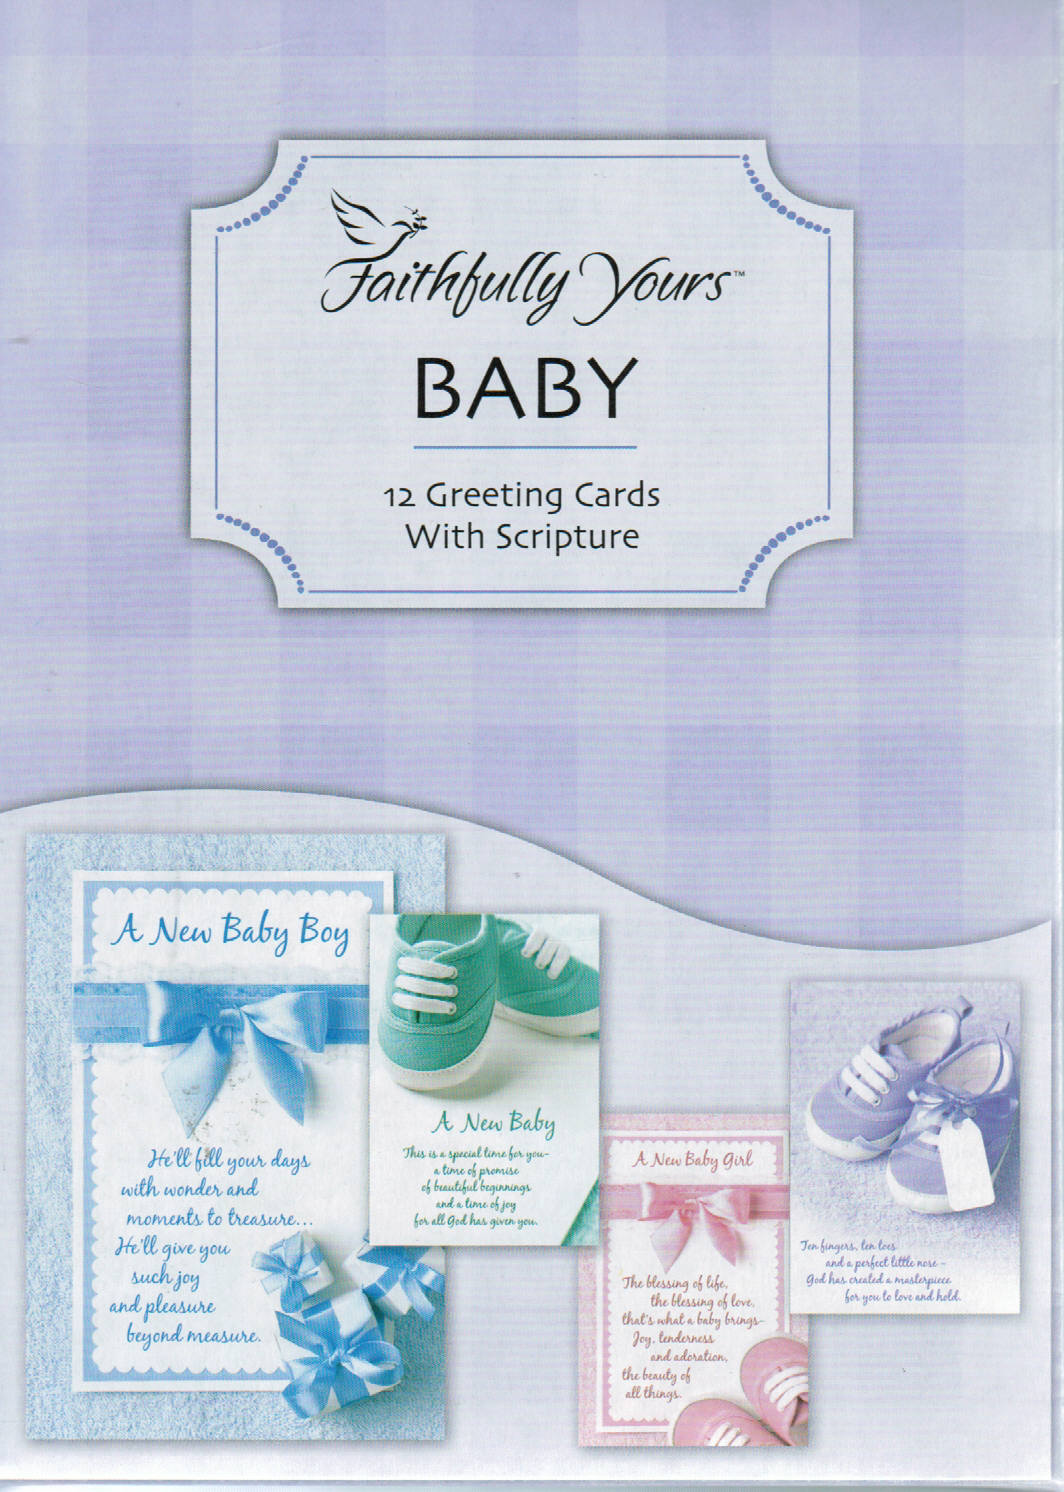 Faithfully Yours Greeting Cards - Baby: Bundle of Joy